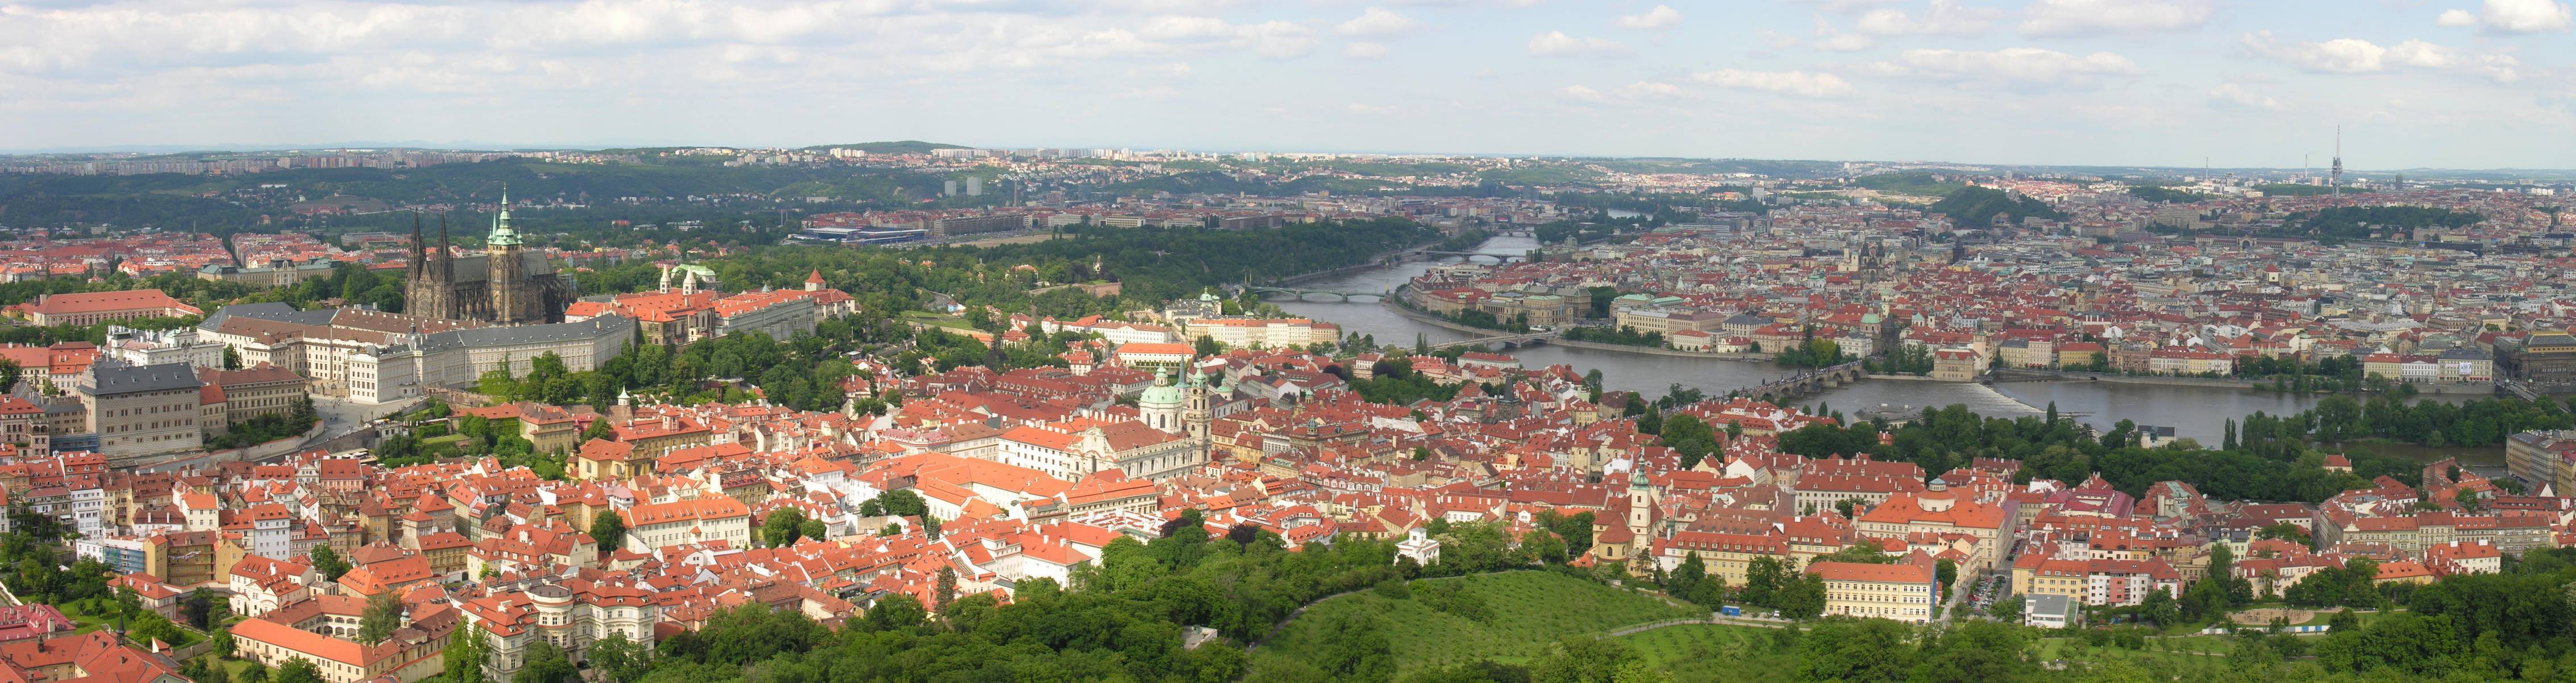 General view - Prague - Czech Republic2.jpg